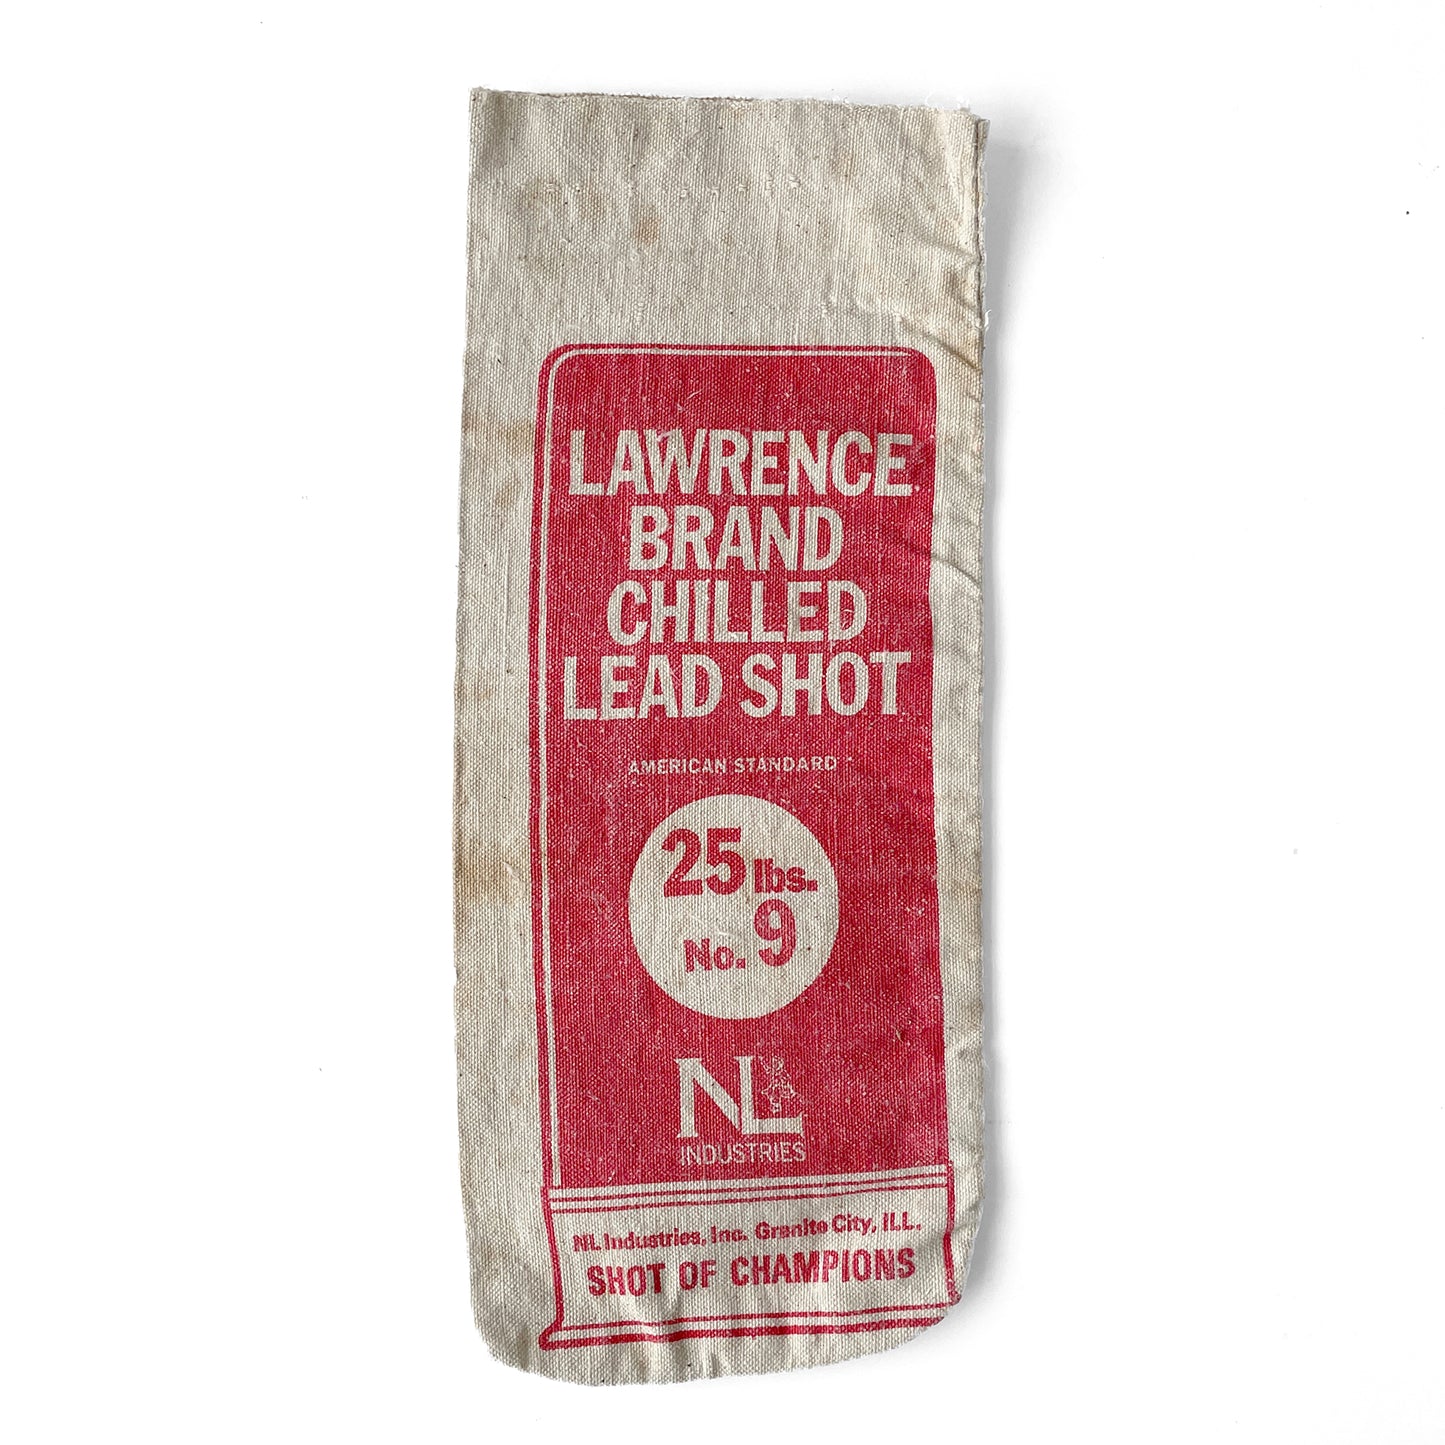 Vintage Lead Shot Bag – ‘Lawrence Brand Chilled Lead Shot’